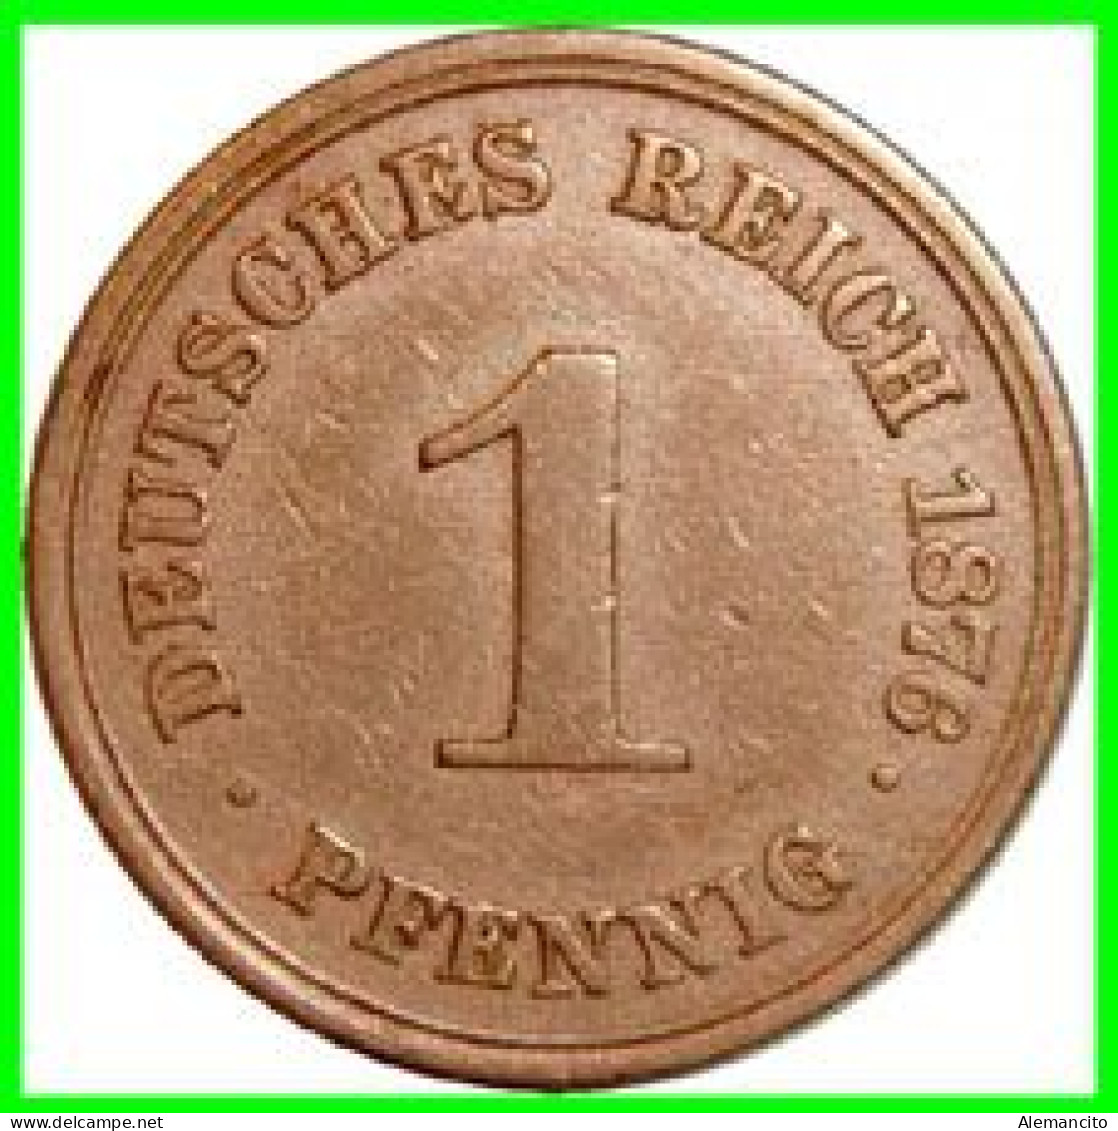 ALEMANIA – GERMANY - IMPERIO MONEDA DE COBRE DIAMETRO 17.5 Mm. DEL AÑO 1876 – CECA-A- KM-1  GOBERNANTE: GUILLERMO I - 1 Pfennig